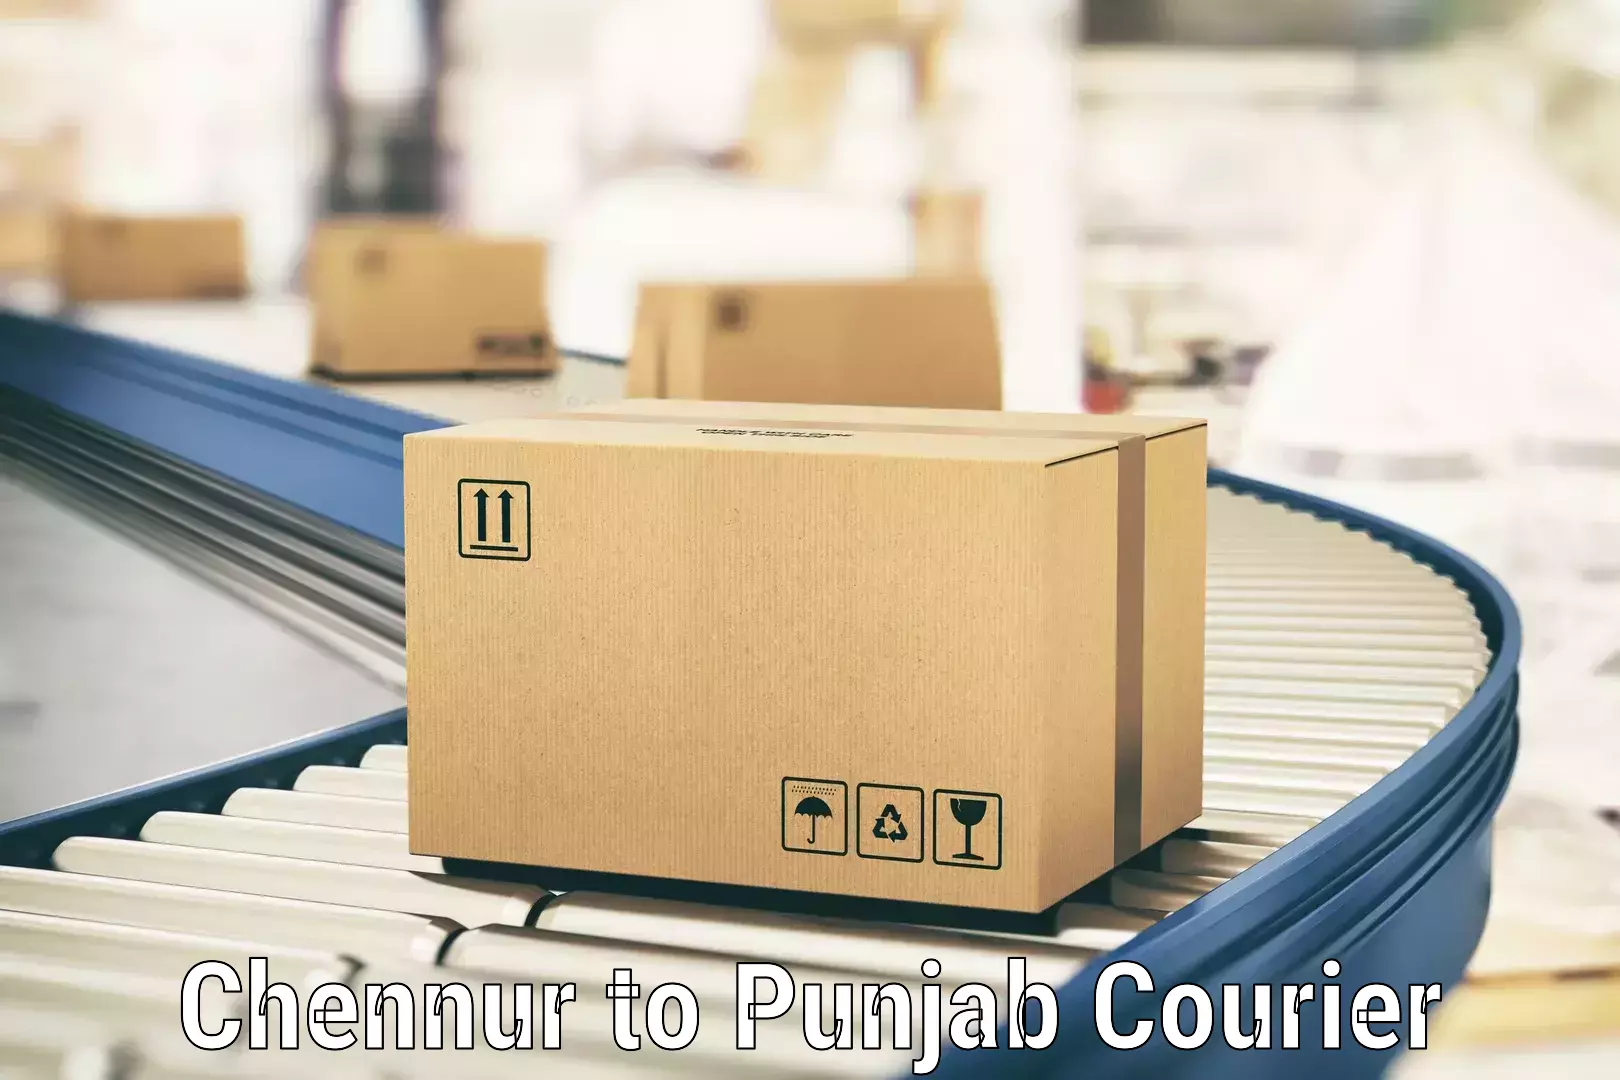 Urgent courier needs Chennur to Amritsar